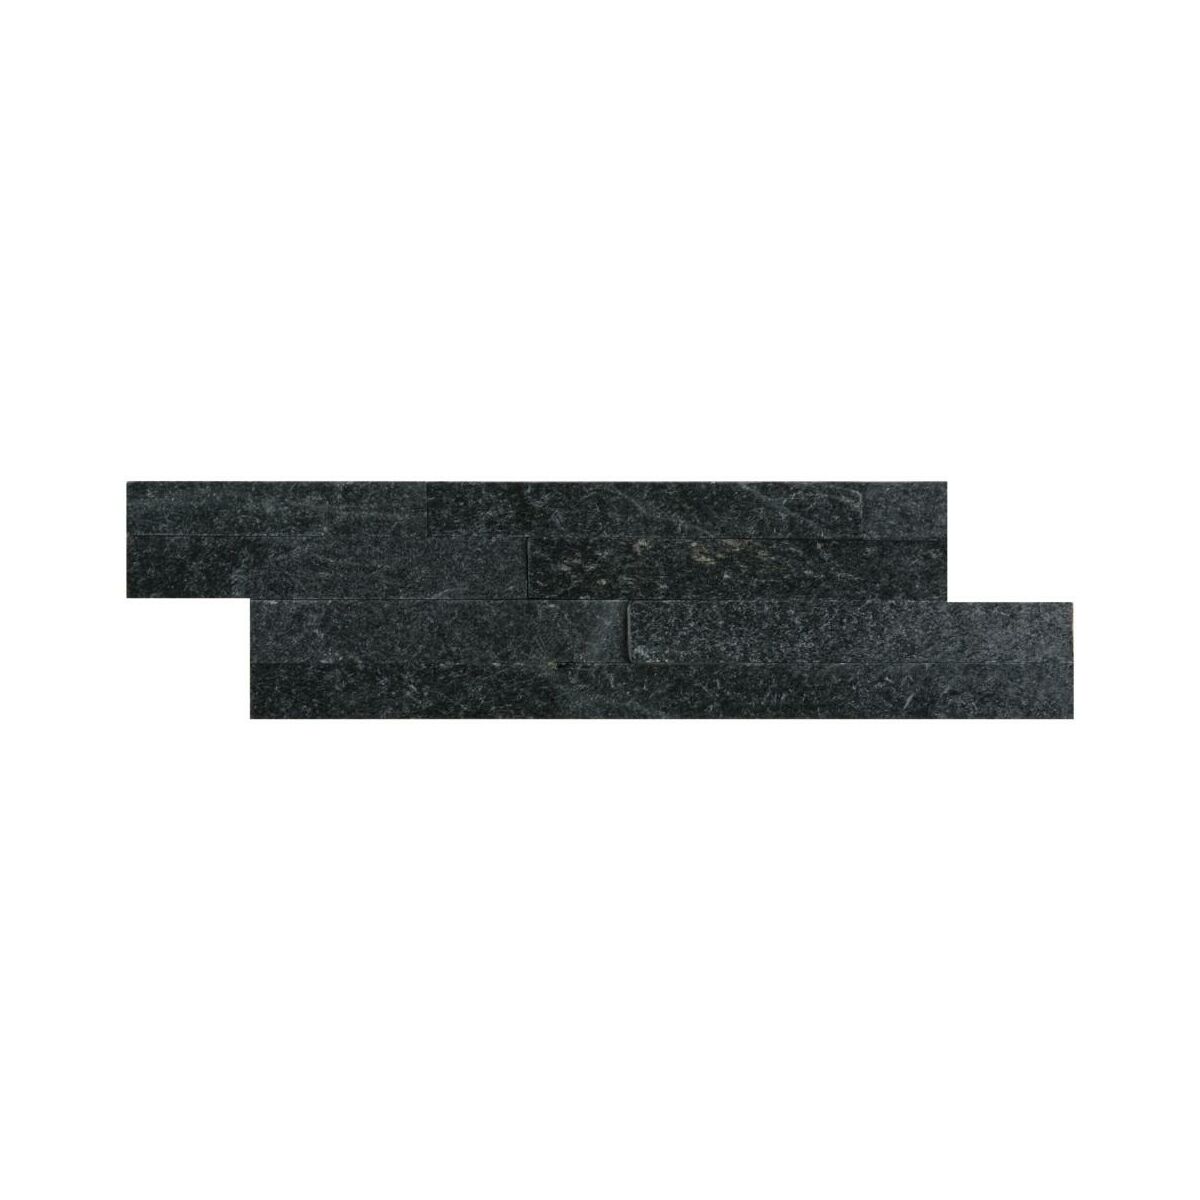 Kamien Naturalny Kwarc Czarny 40 X 10 Cm Steinblau Kamien Elewacyjny I Dekoracyjny W Atrakcyjnej Cenie W Sklepach Leroy Merlin